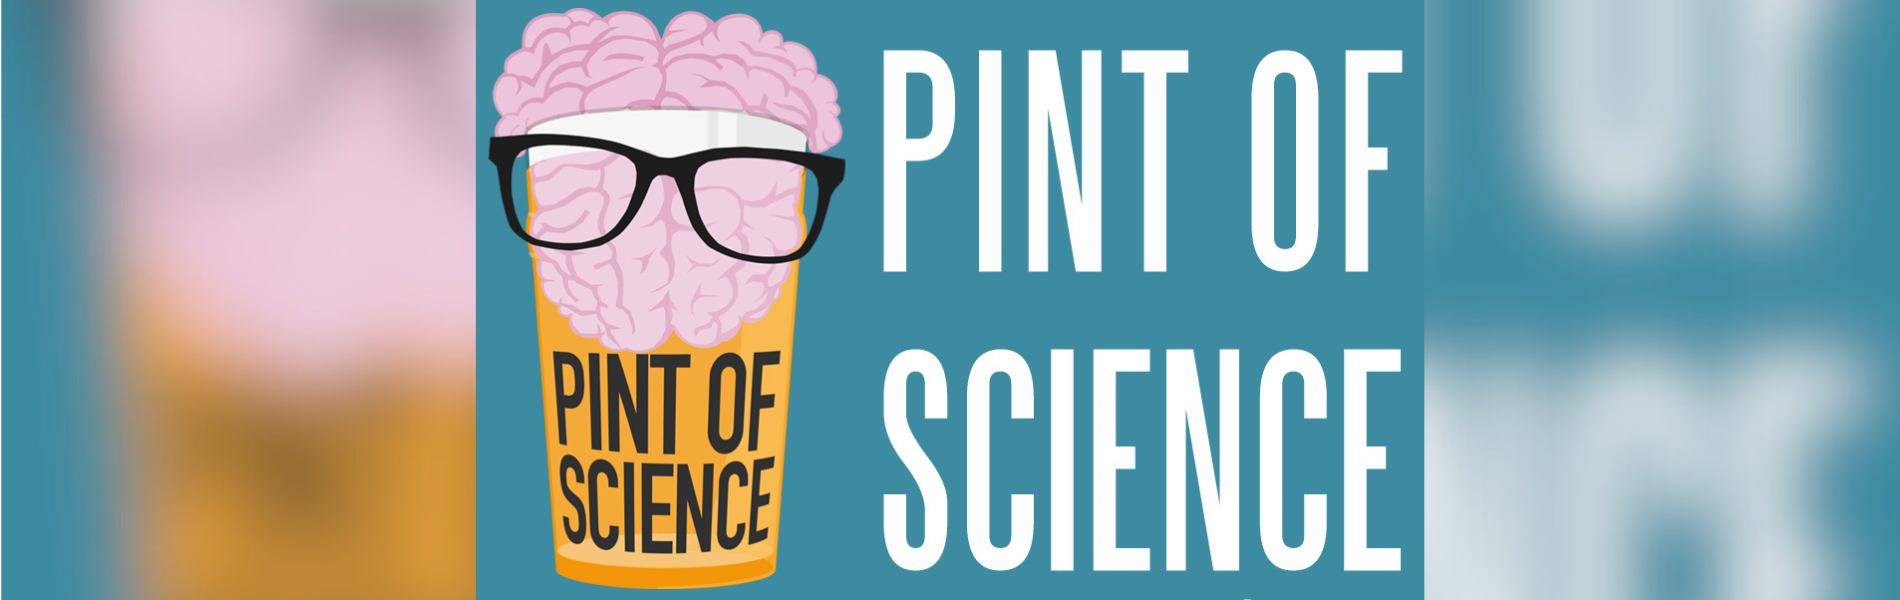 Foto da logo do evento mostrando o desenho de um cérebro de óculos dentro de um copo ao lado do termo "Pint of Science"